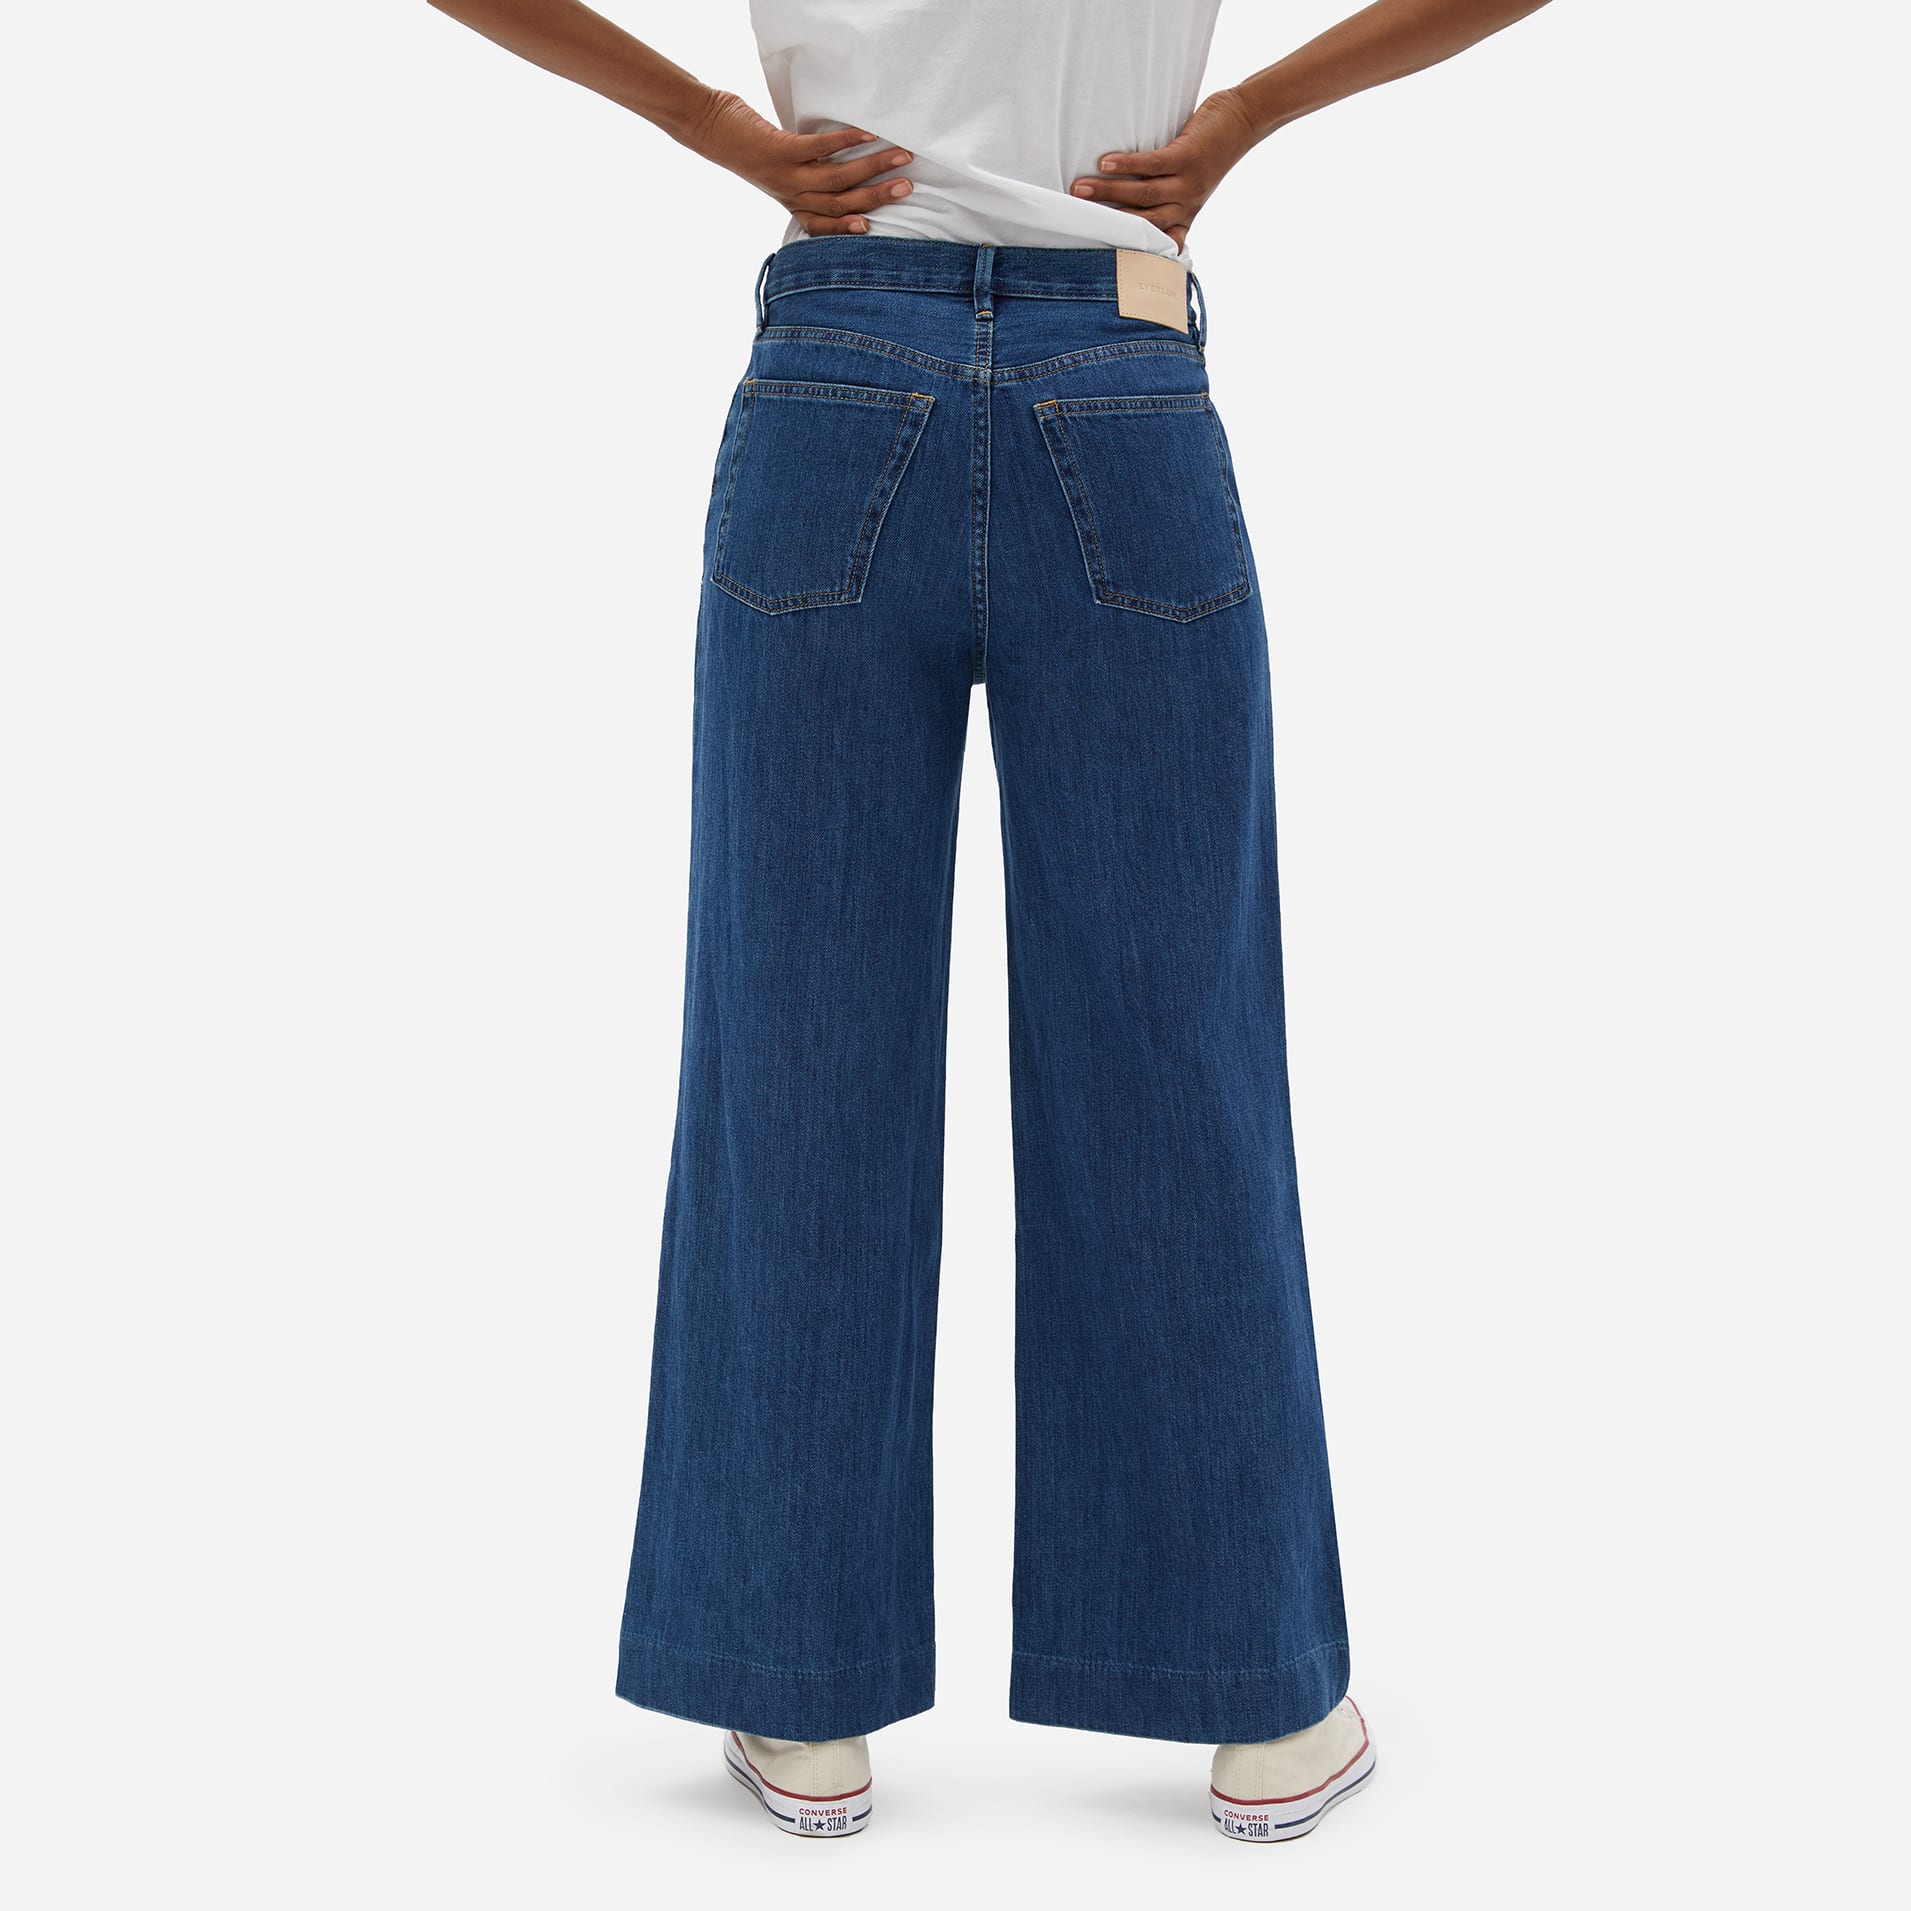 super wide leg jeans